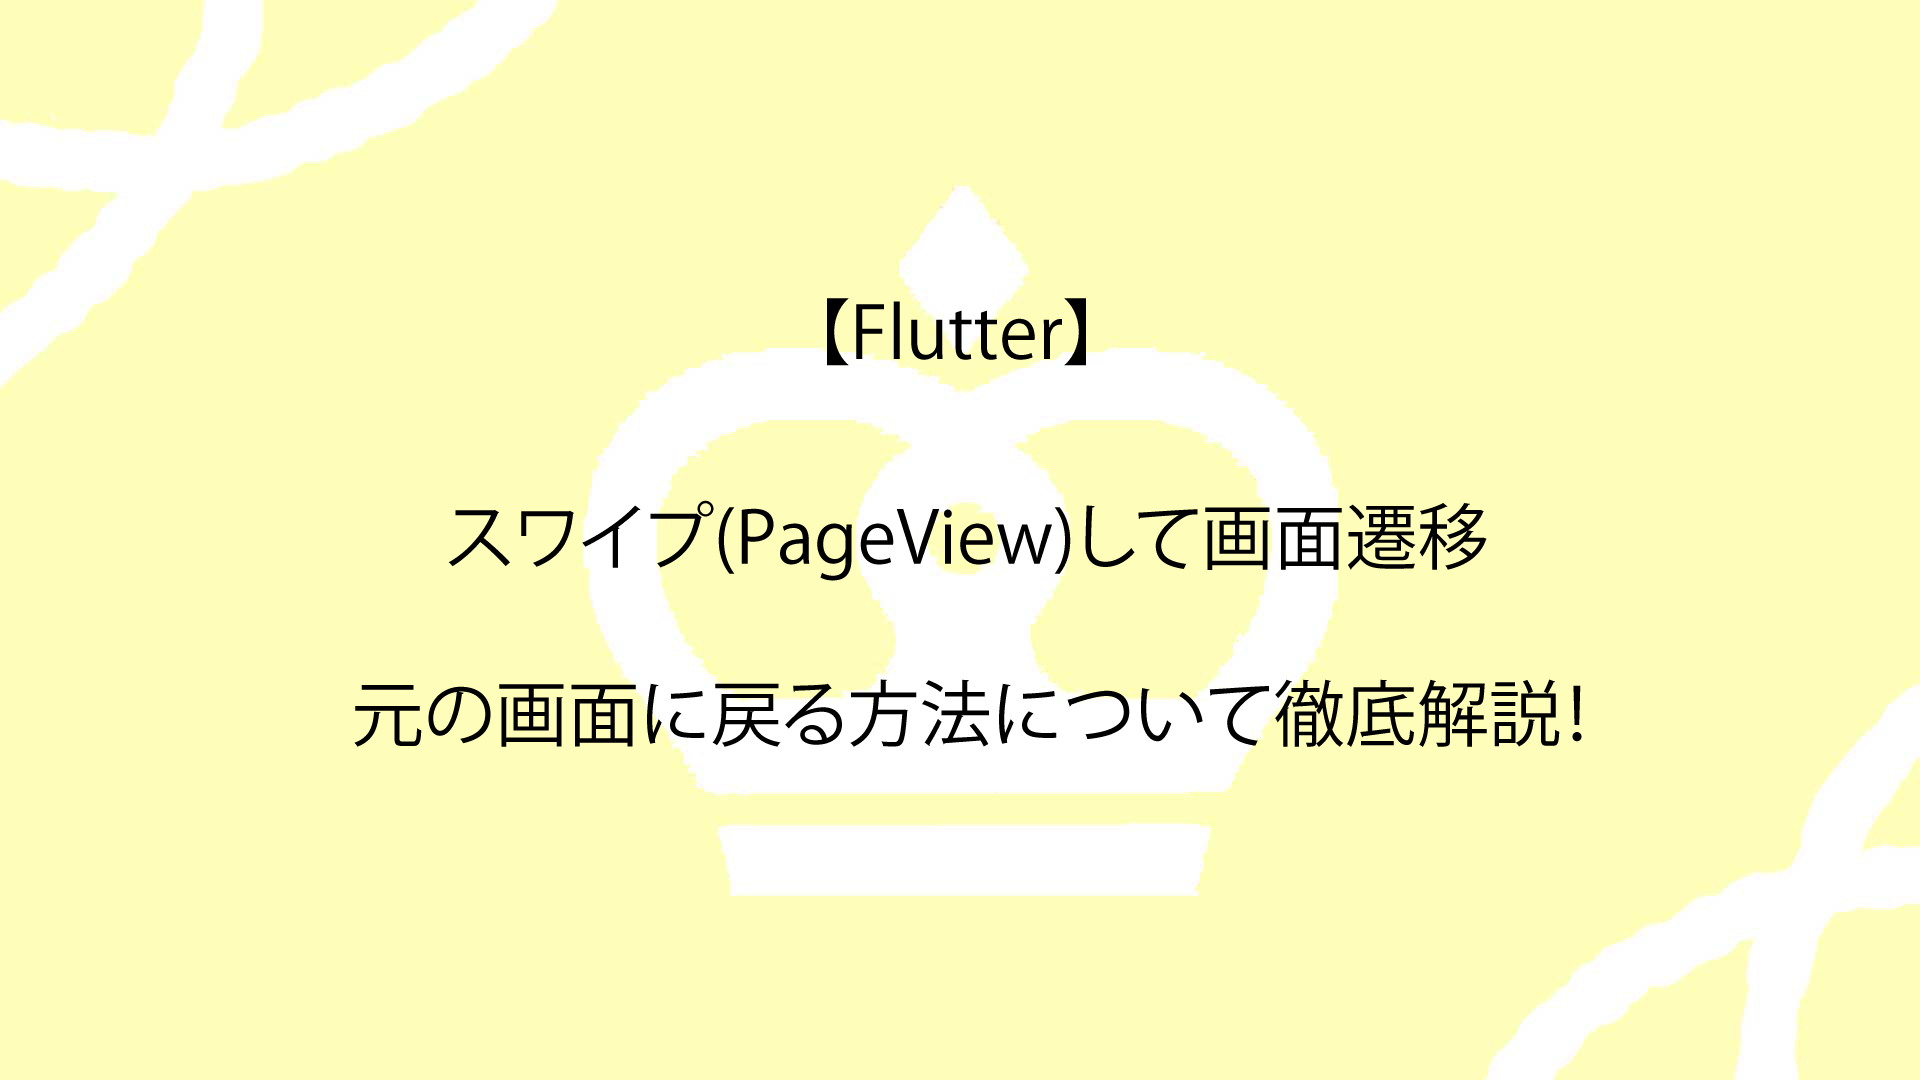 【Flutter】スワイプ(PageView)して画面遷移したり元の画面に戻る方法について徹底解説！